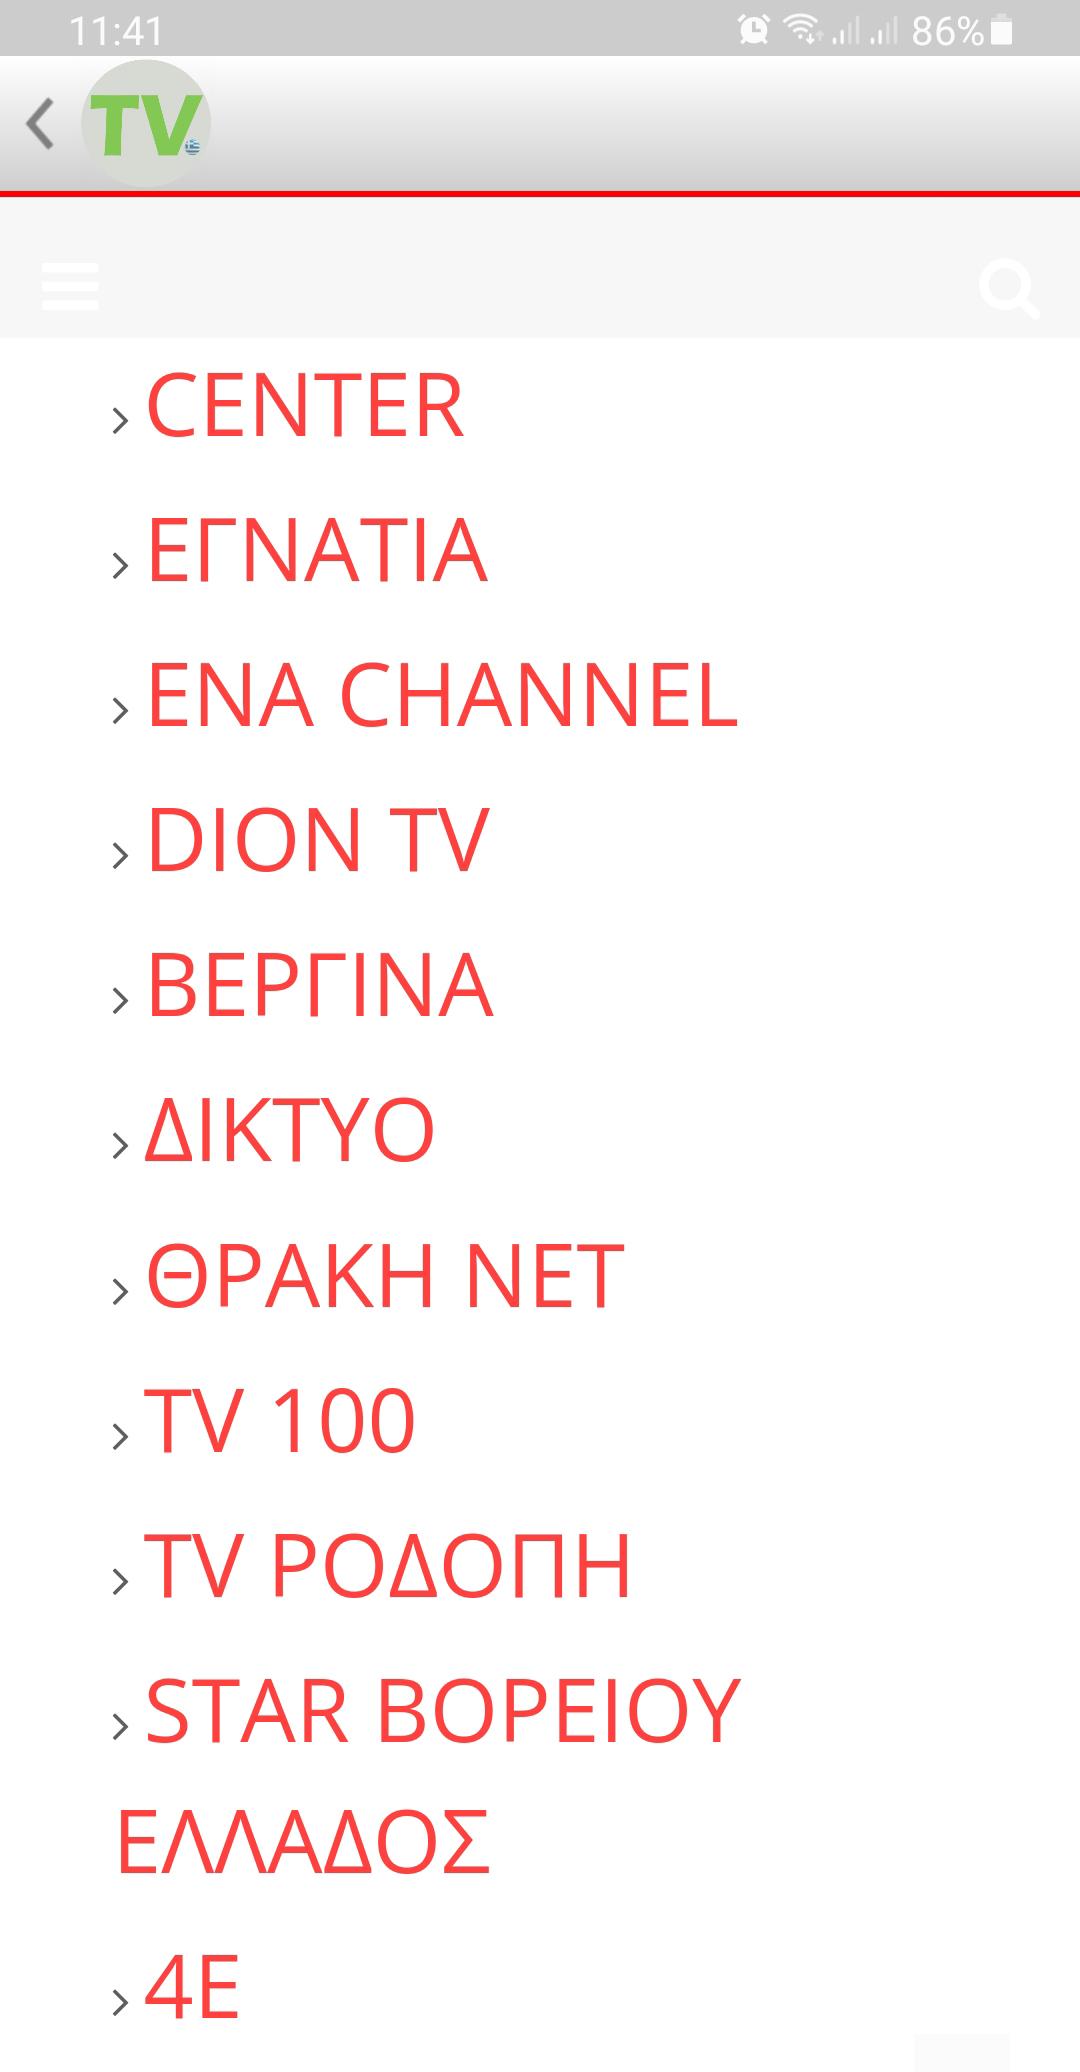 Ελληνική τηλεόραση for Android - APK Download